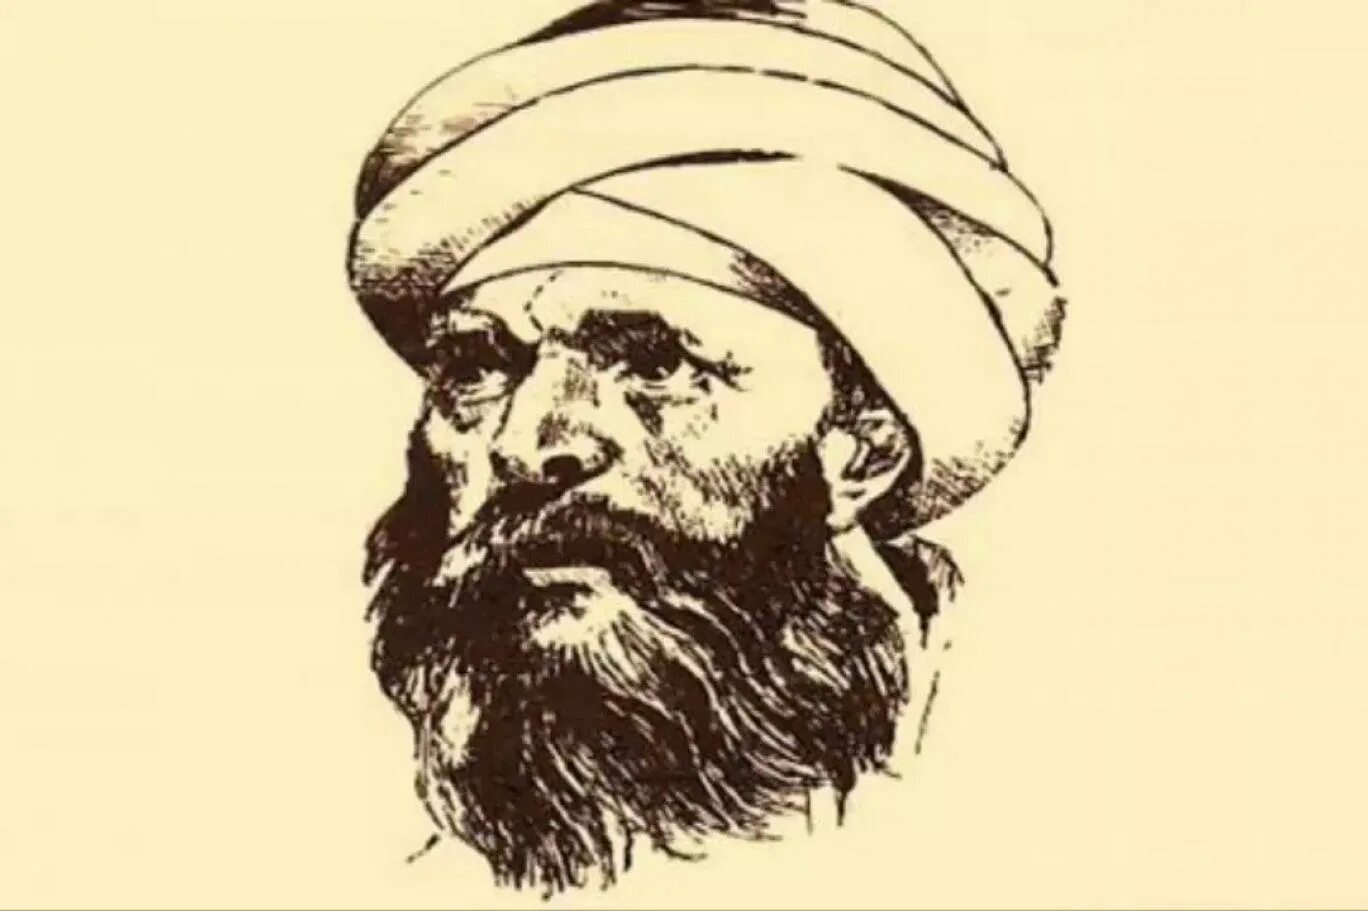 Мухаммад Аль Газали. Аль-Газали, 1058—1111. Абу Хамид g'azzoliy. Аль-Газали философия. Абу хамид аль